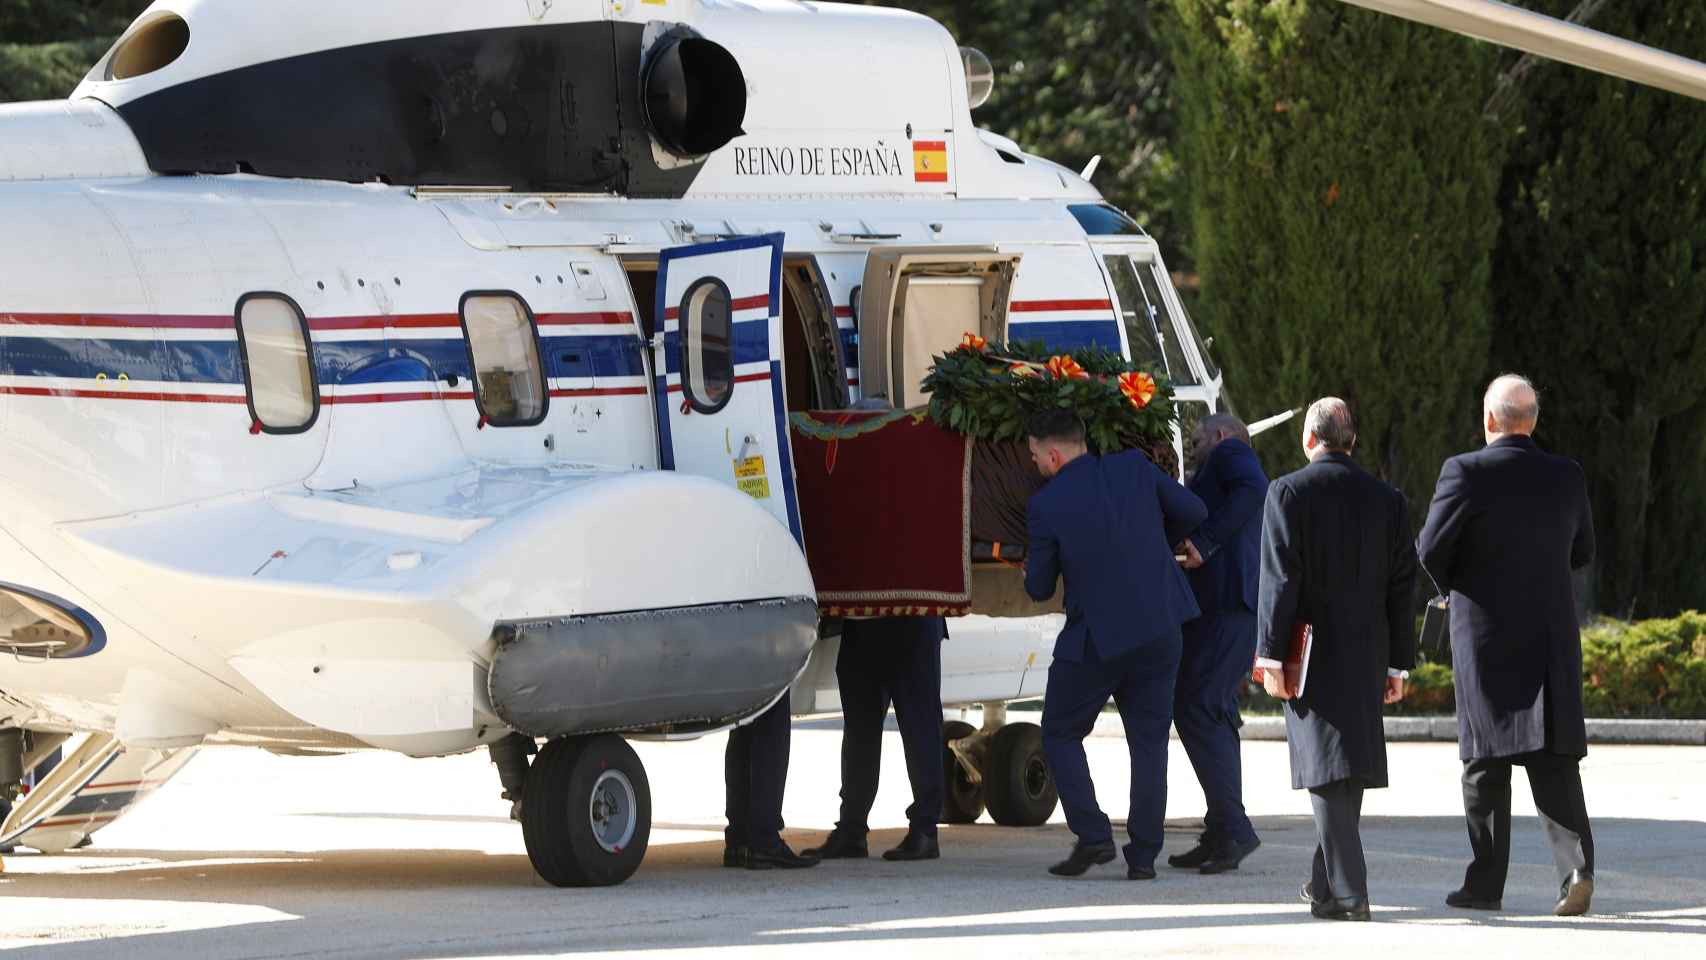 El ataúd de Franco entrando en el helicóptero.